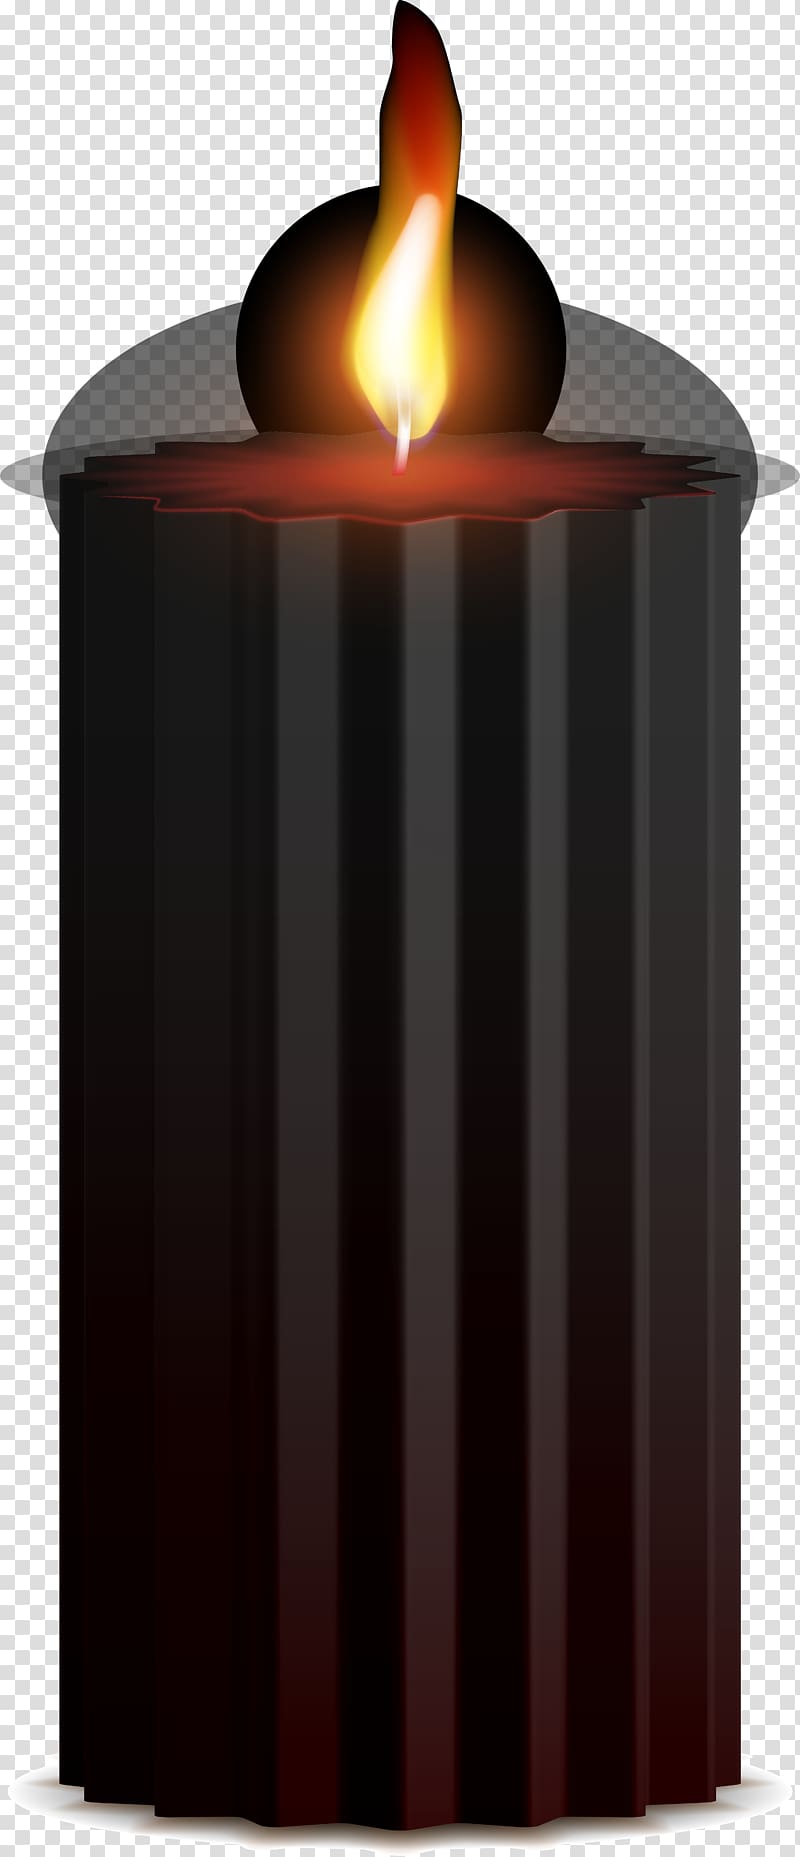 Light Black, Black sparkling candlelight transparent background PNG clipart